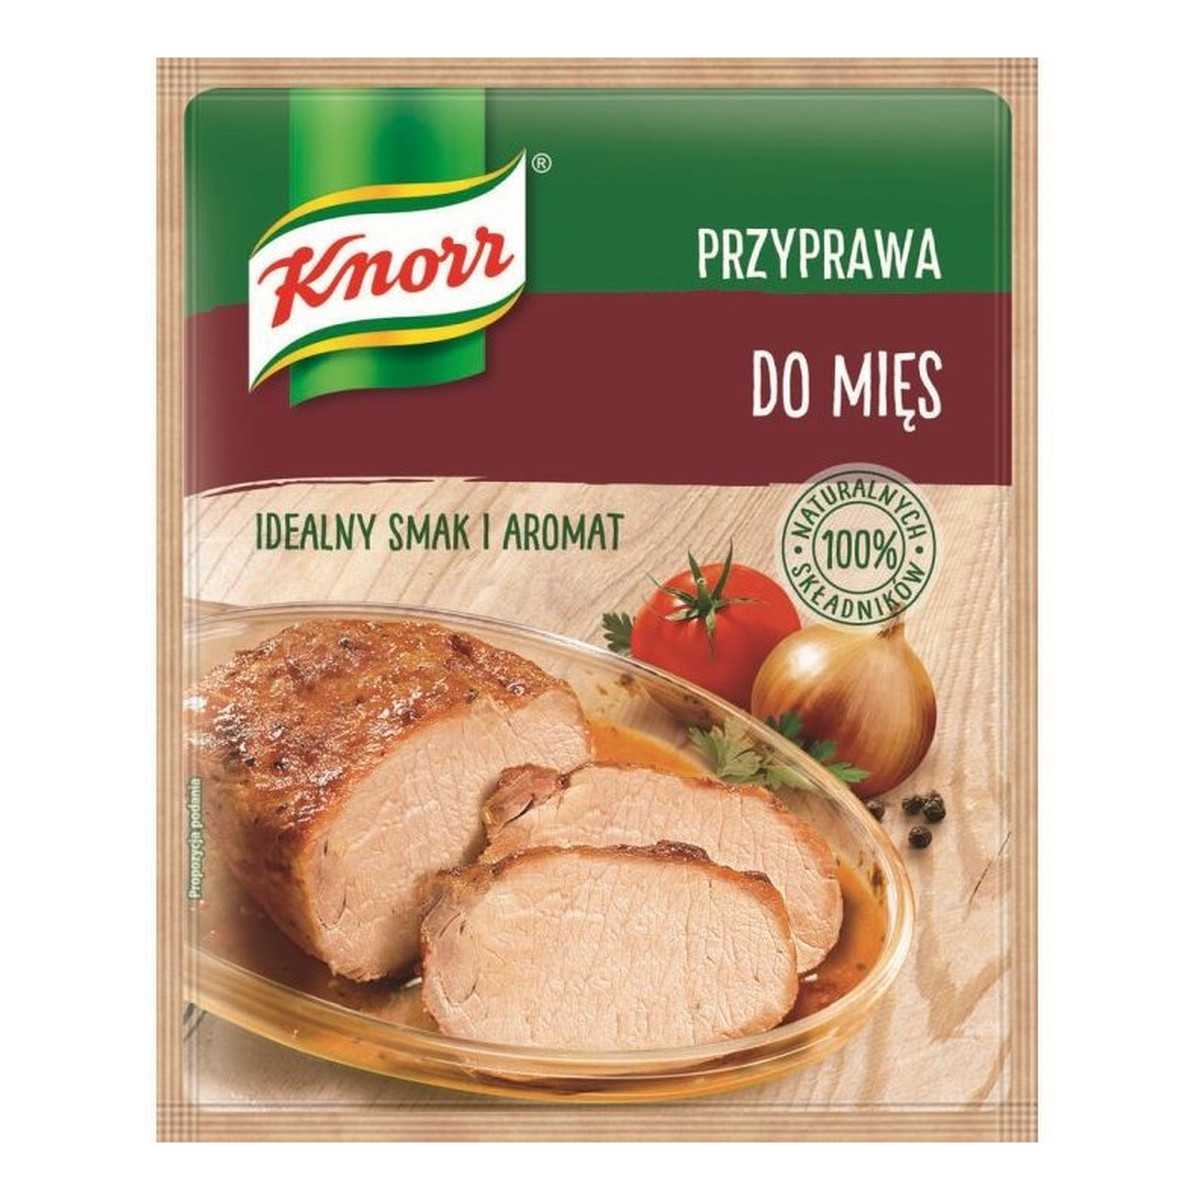 Knorr Przyprawa do mięs 75g